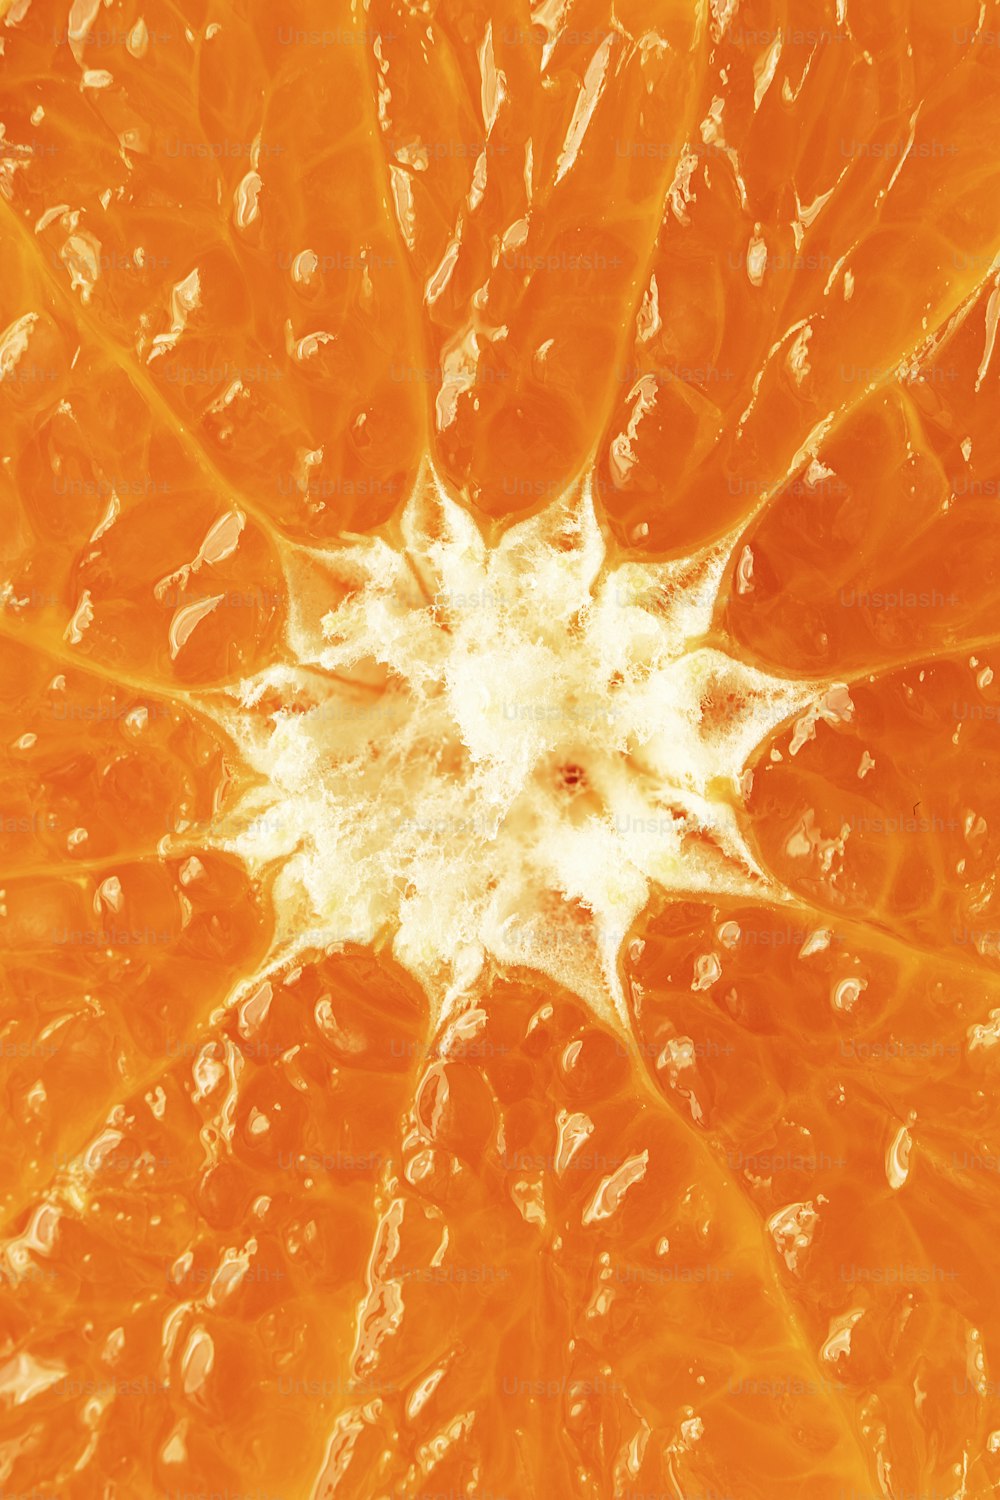 um close up de uma laranja com gotas de água sobre ela